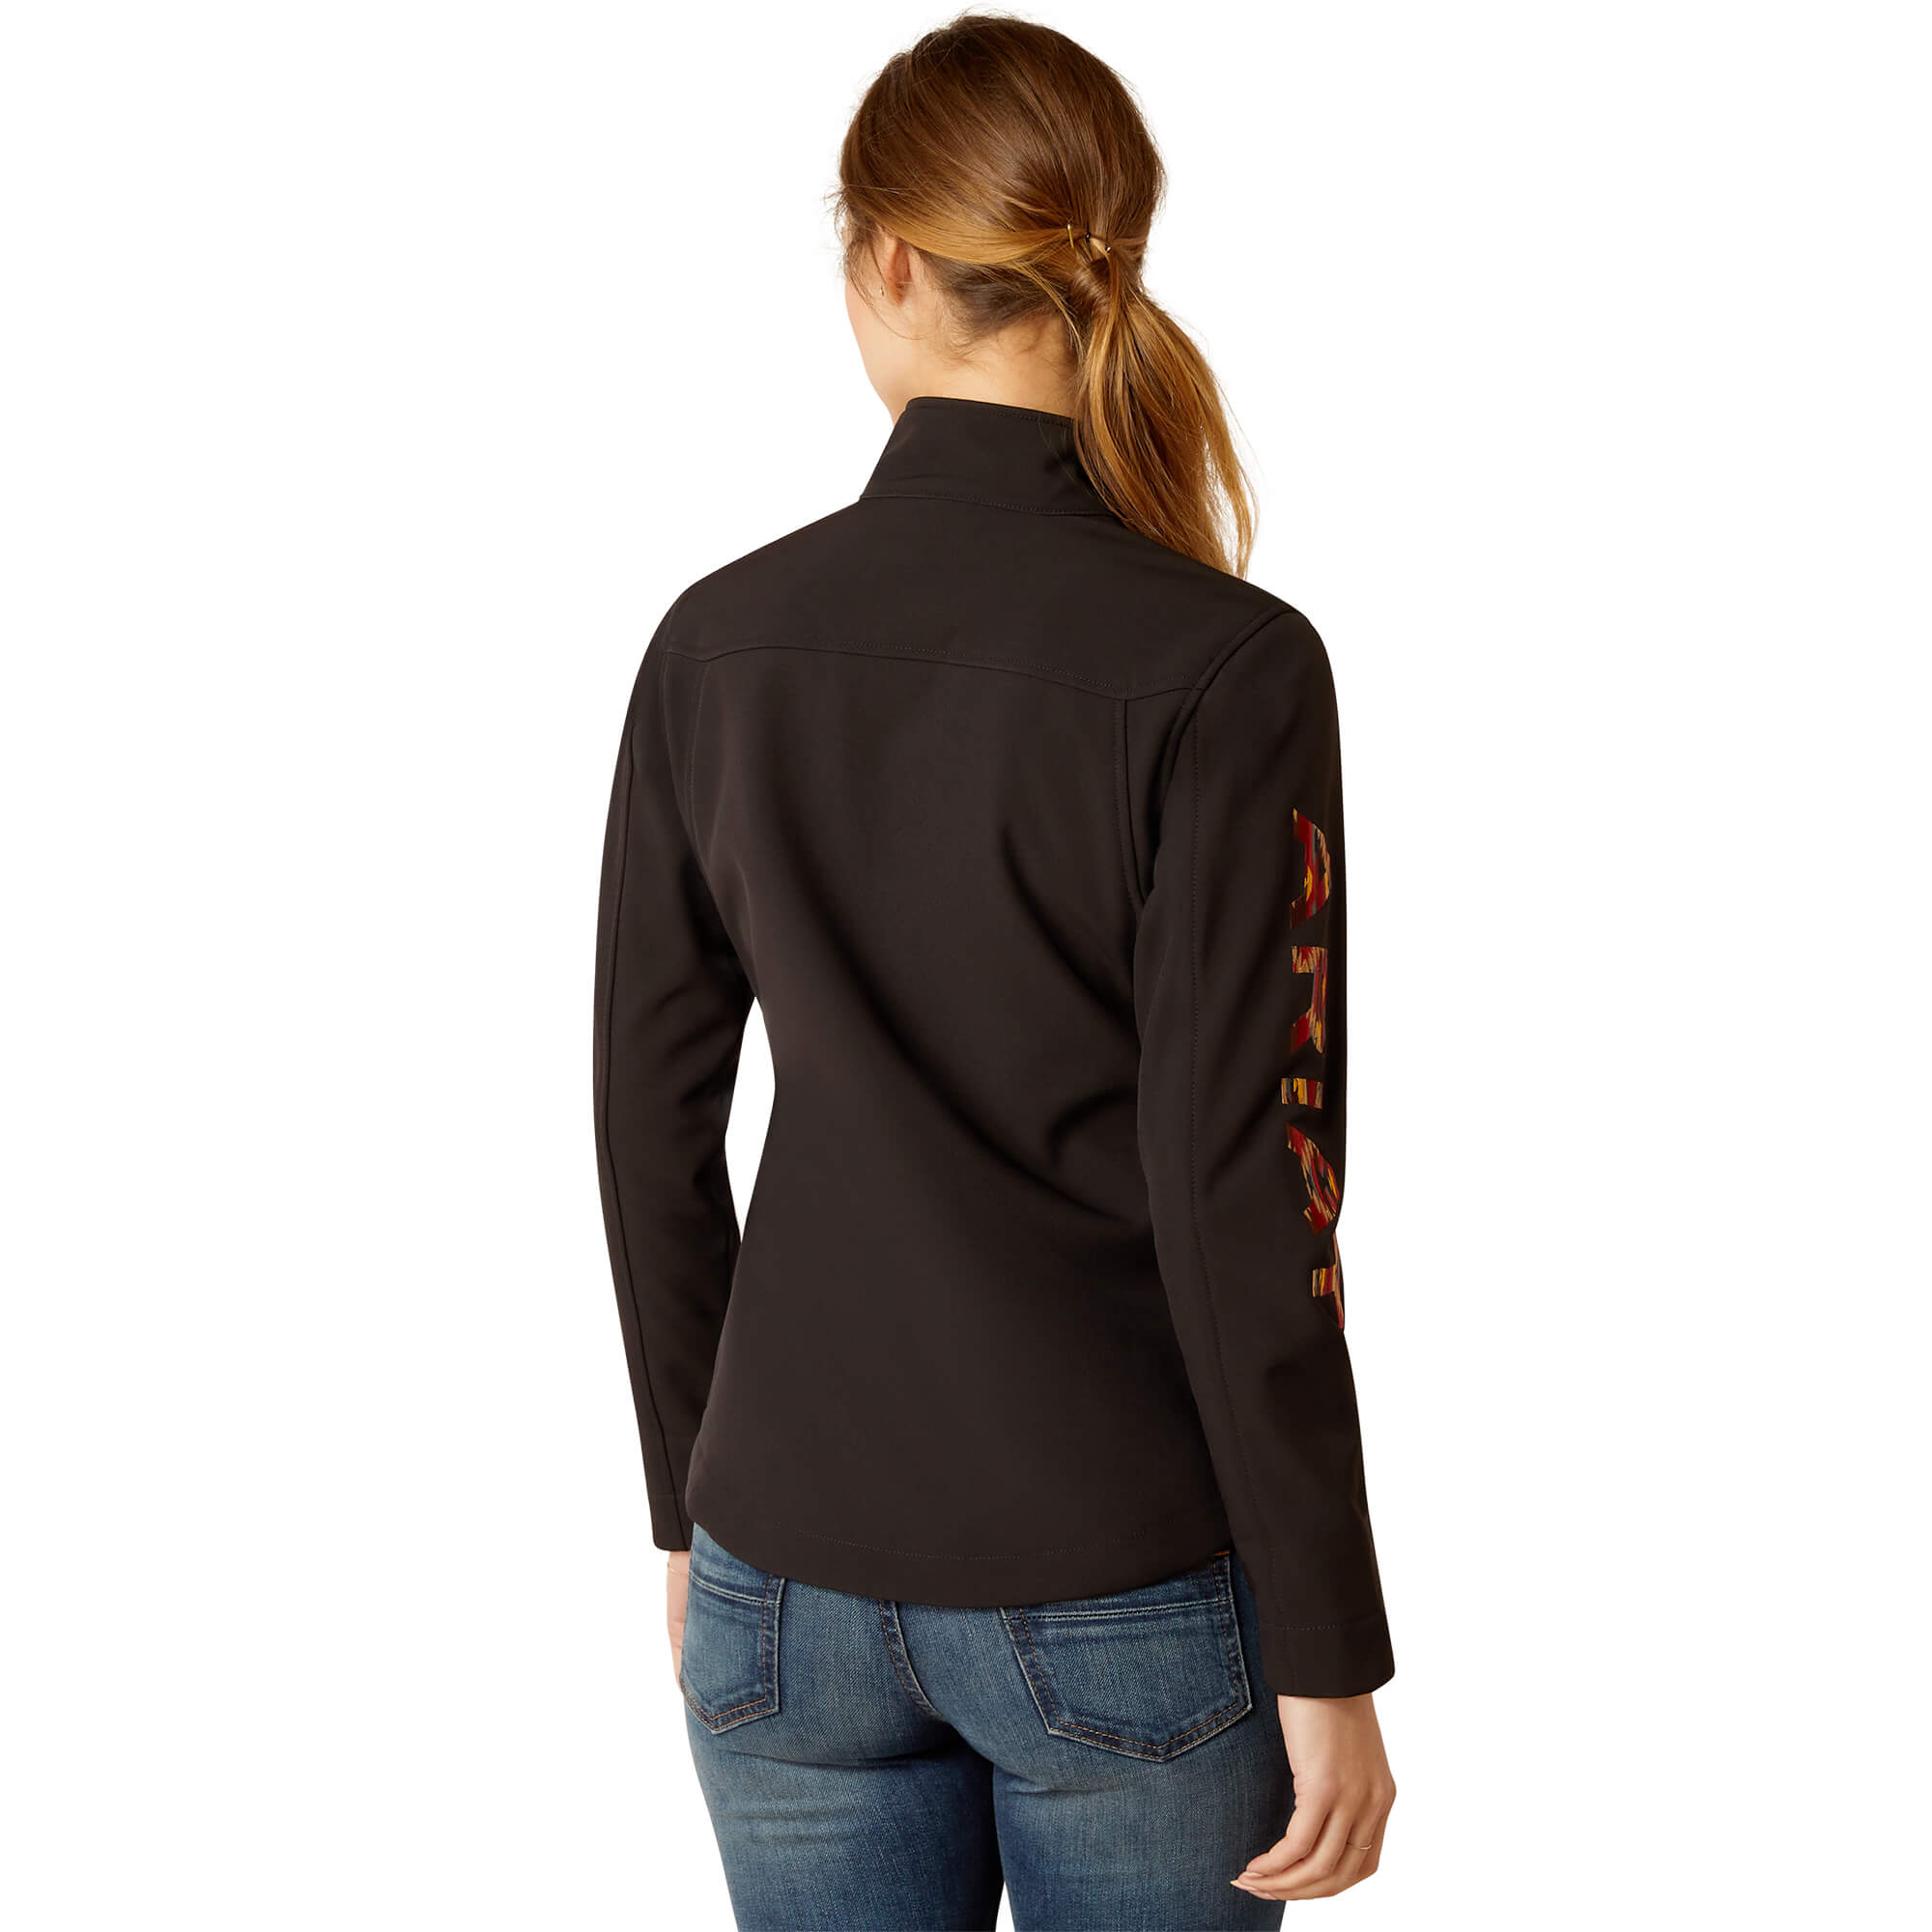 Ariat Women's Black Mirage New Team Softshell Jacket